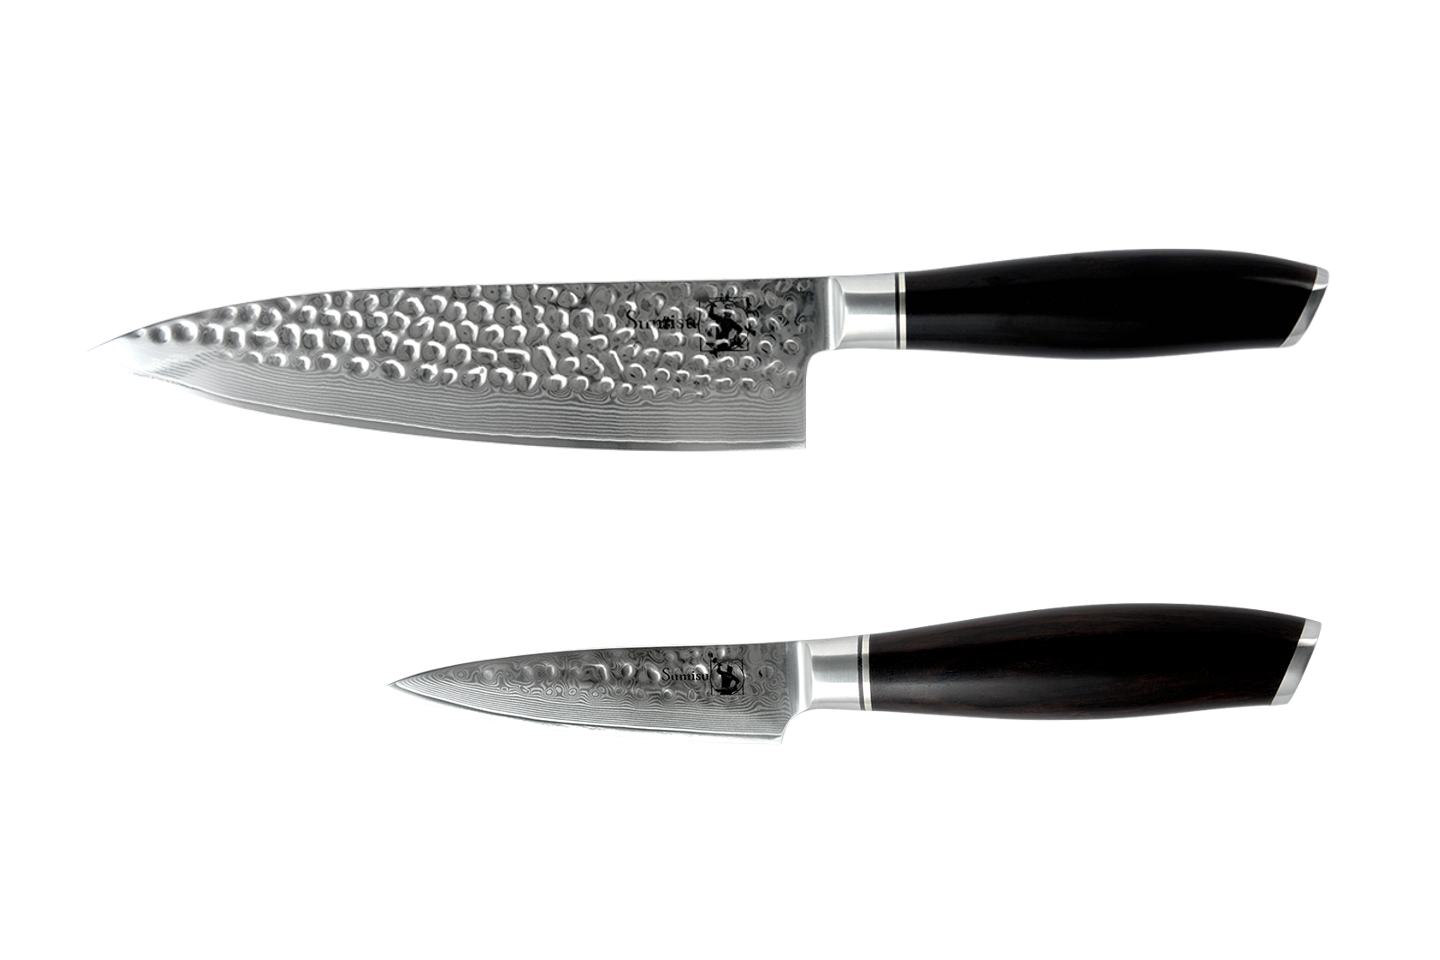 Sumisu - Kaki knivsæt med 2 køkkenknive - Startersættet - 67 Lags Damaskusstål - Sort, damaskus stål, blank